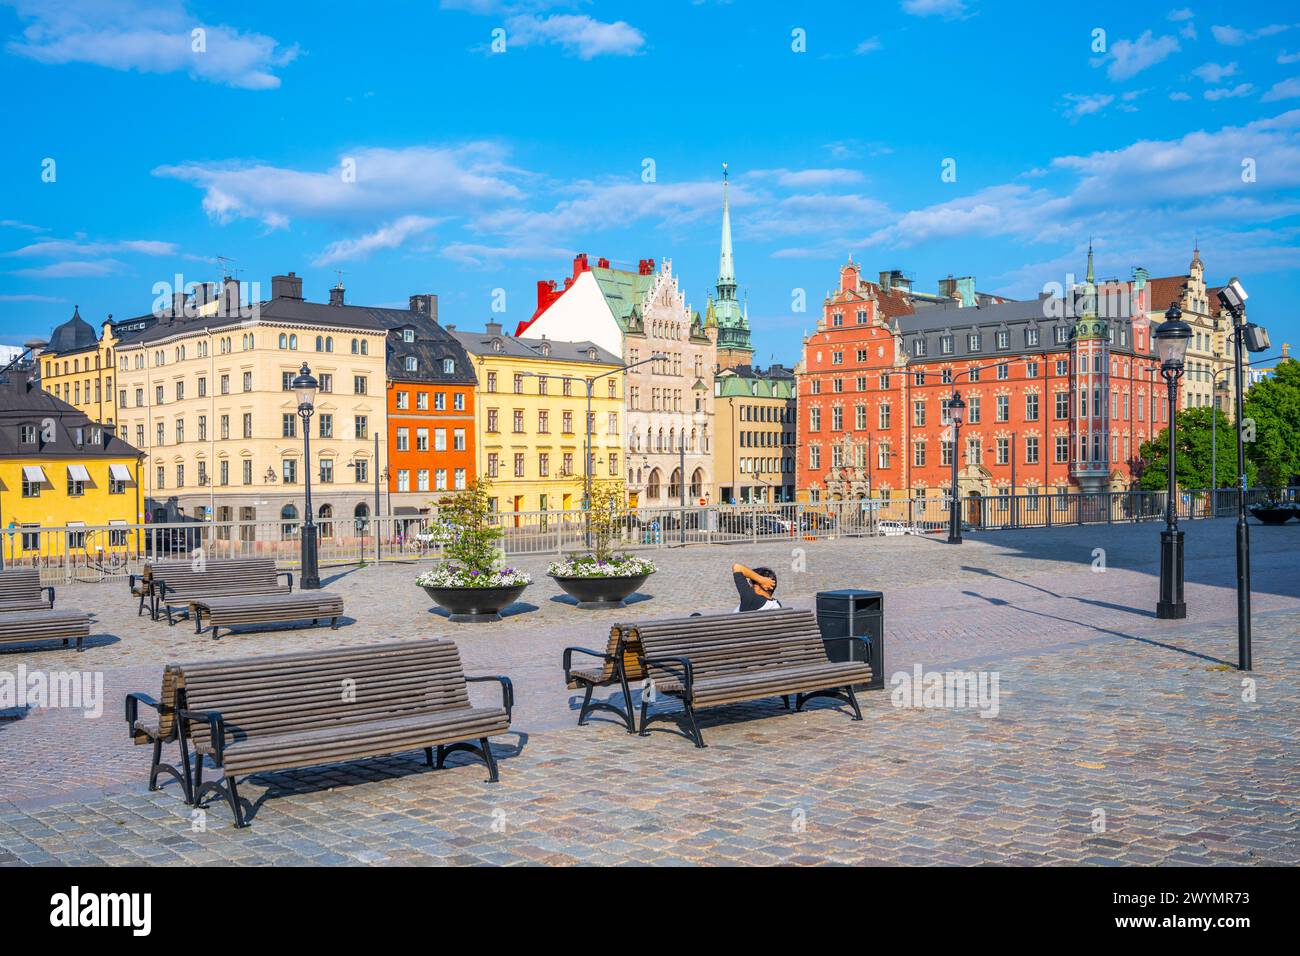 Bänke säumen einen kopfsteingepflasterten Platz in Stockholm, umgeben von historischen, farbenfrohen Gebäuden unter einem klaren blauen Himmel. Schweden Stockfoto